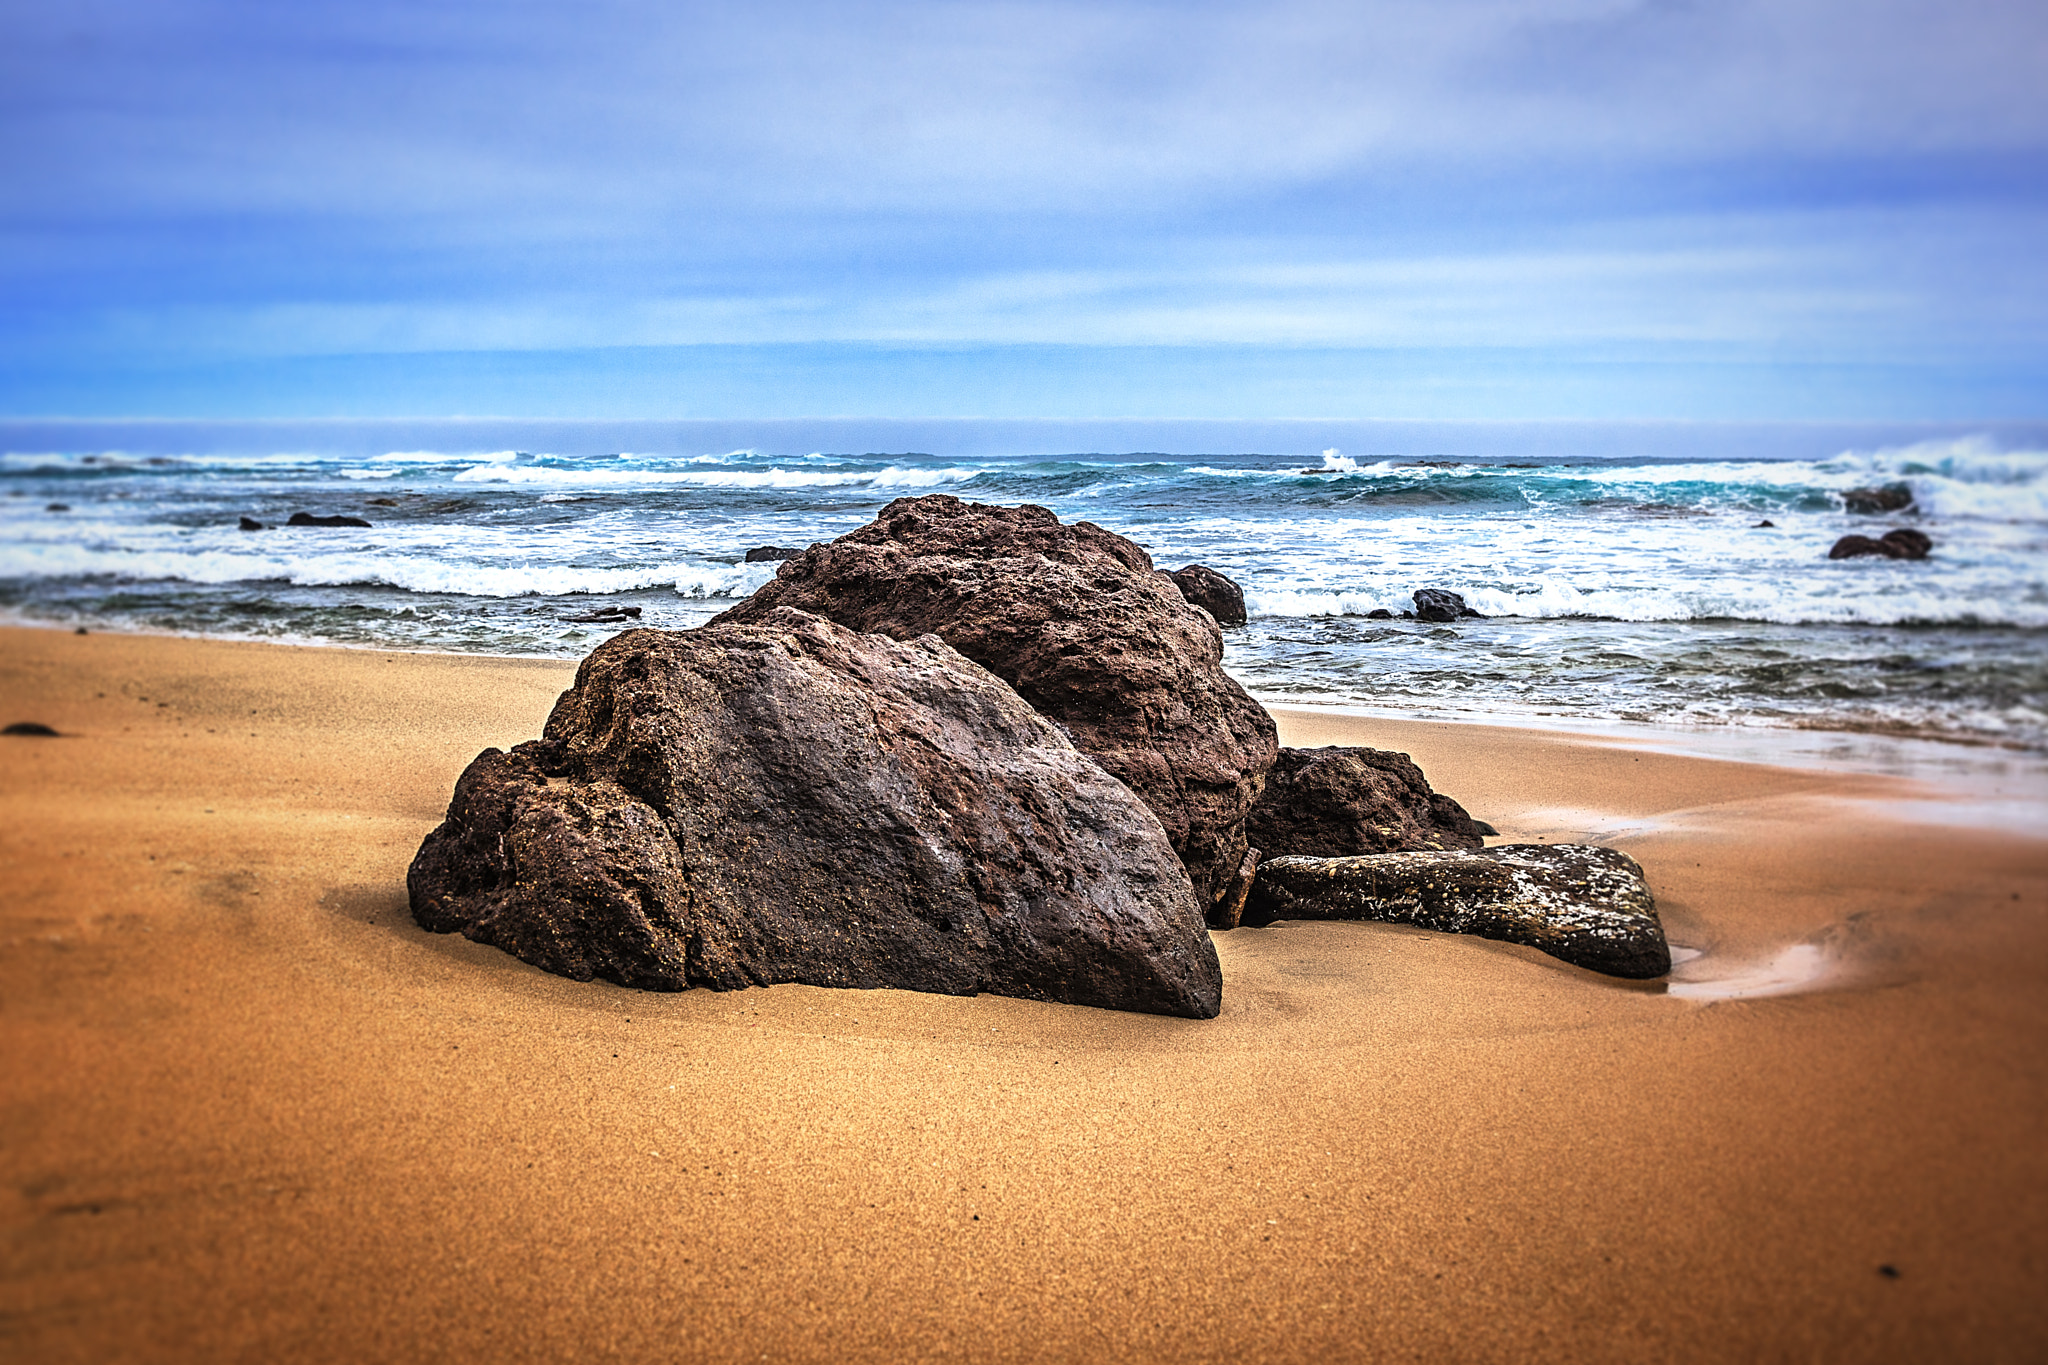 Sony SLT-A77 sample photo. Rocks on the beach photography